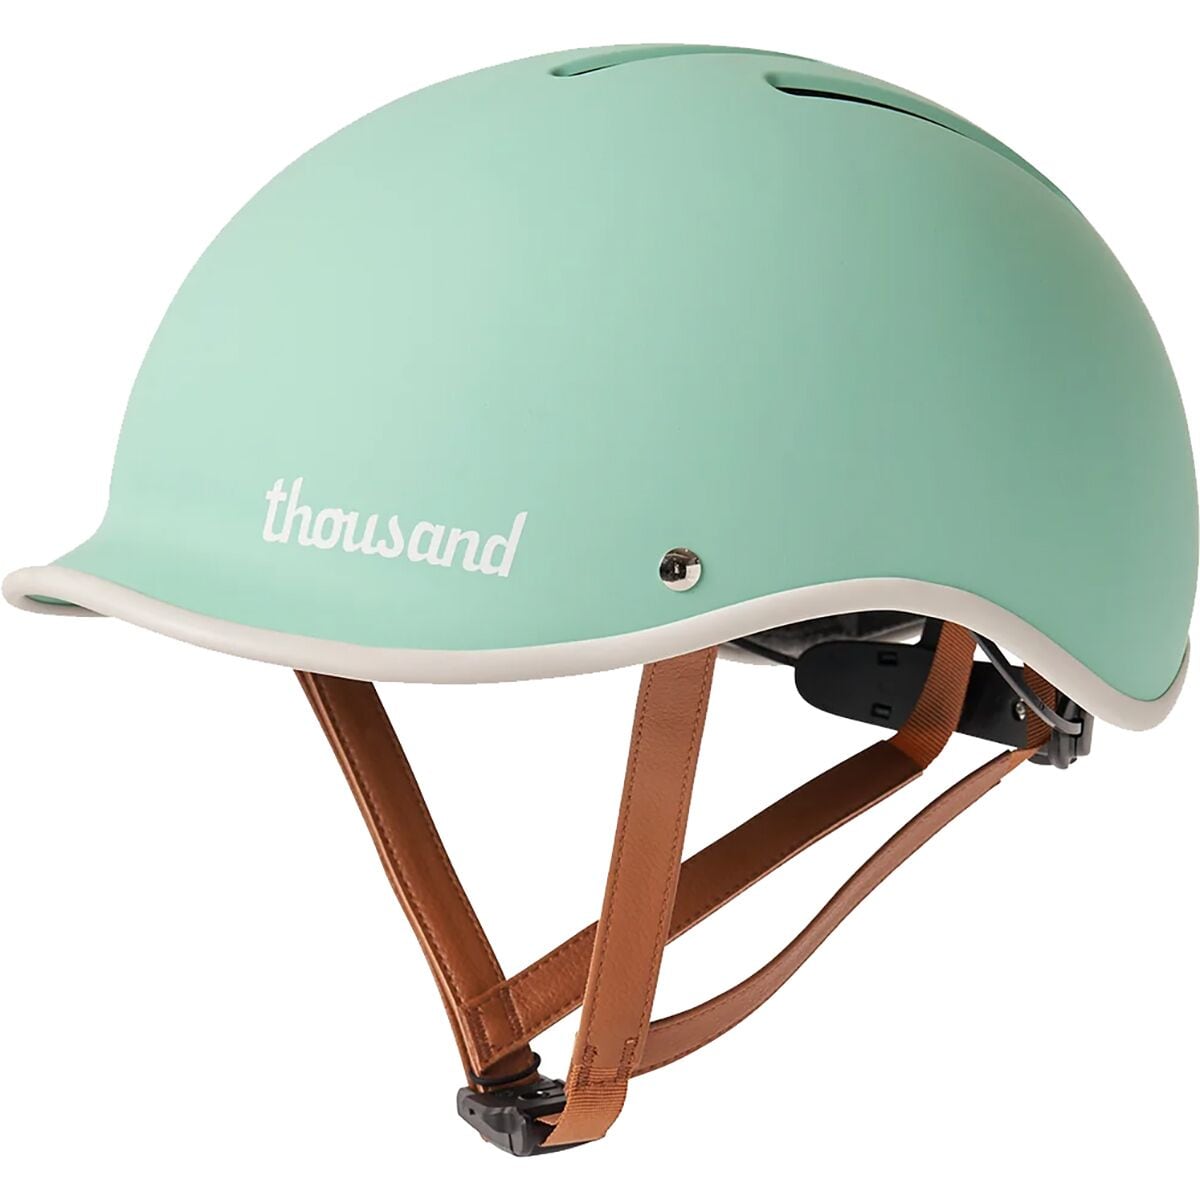 Thousand Heritage 2.0 Helmet...